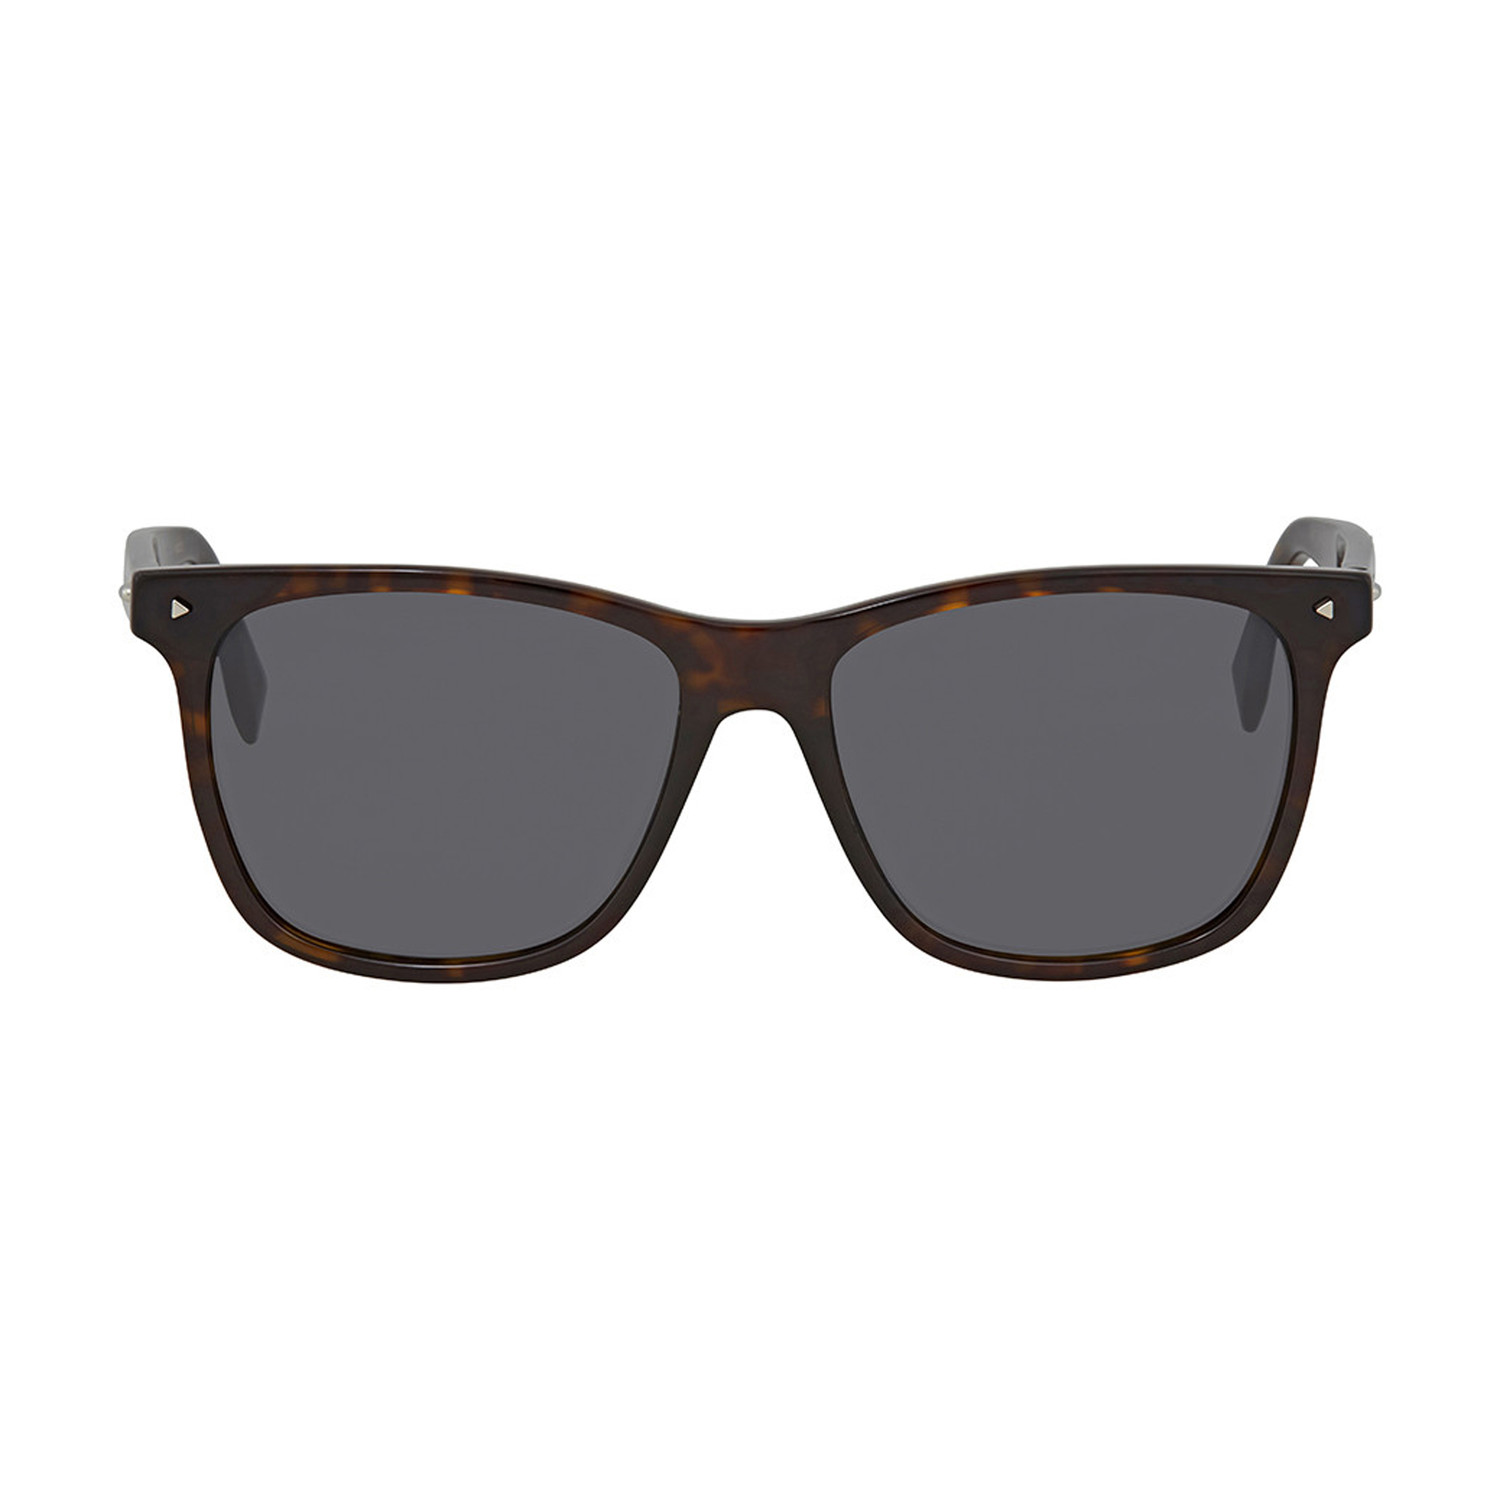 Fendi // Men's Sunglasses // Dark Havana + Gray - Men's Designer ...